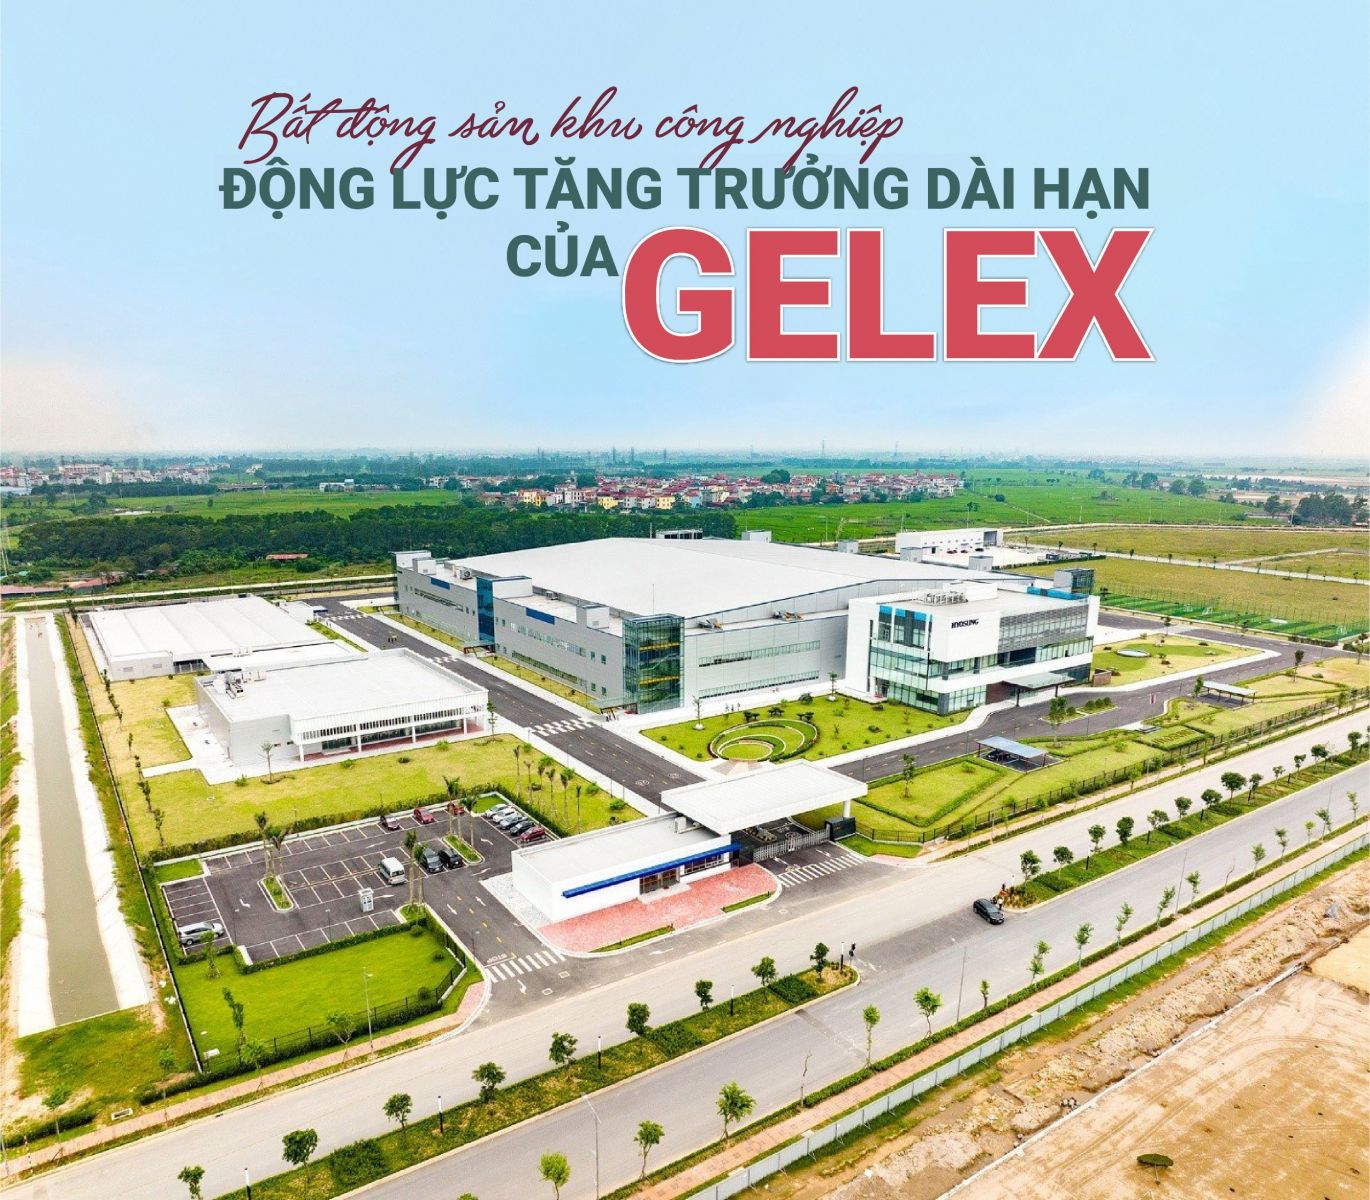 Bất động sản Khu công nghiệp - Động lực tăng trưởng dài hạn của GELEX